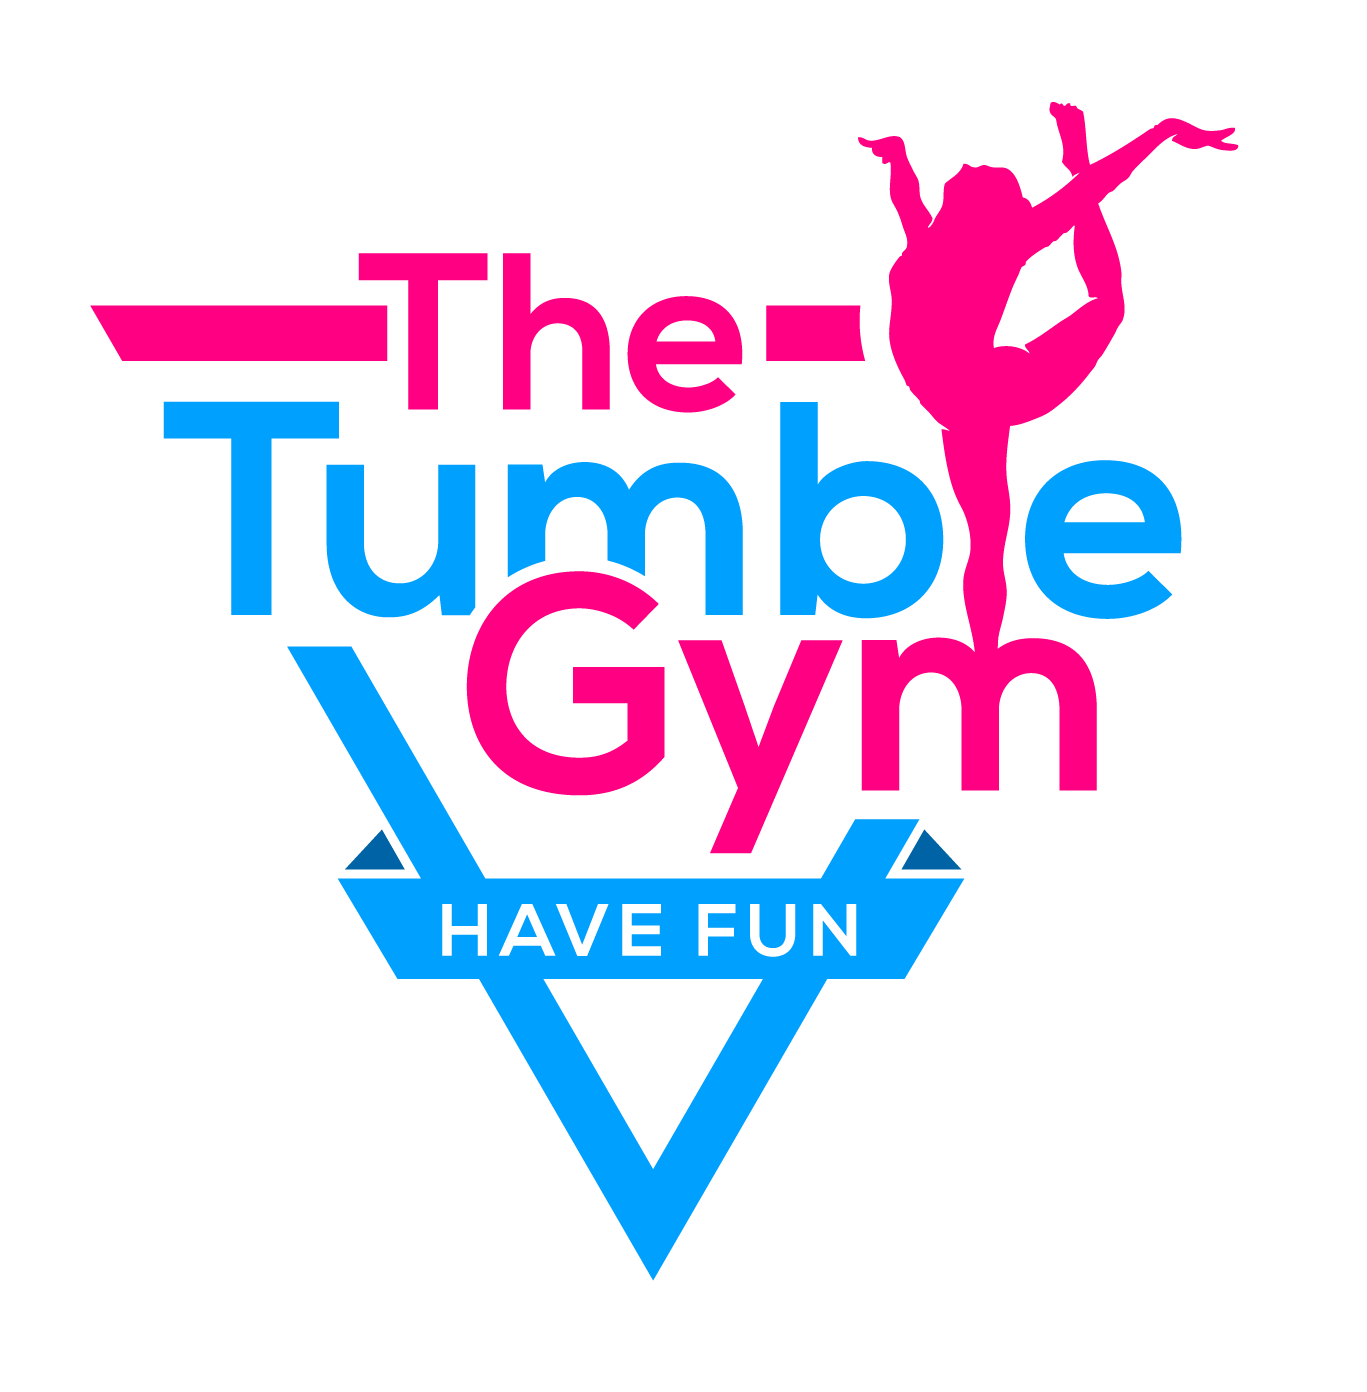 Tumble Gym